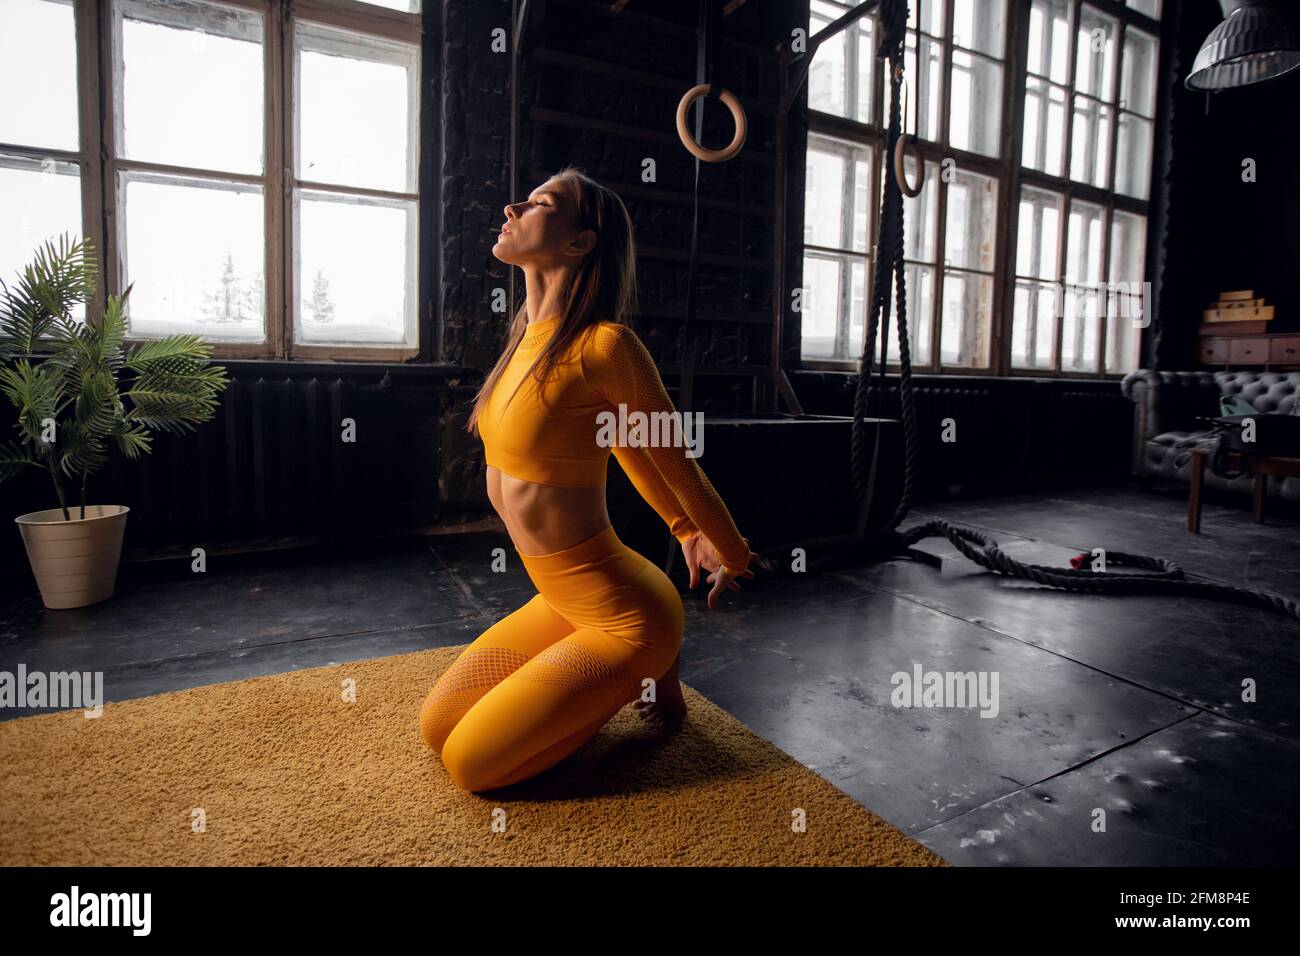 Junge Yogi-Frau, die Yoga-Konzept praktiziert, eine einbeinige King Pigeon-Übung macht, trainiert, Sportkleidung trägt, Loft-Studio Hintergrund Stockfoto